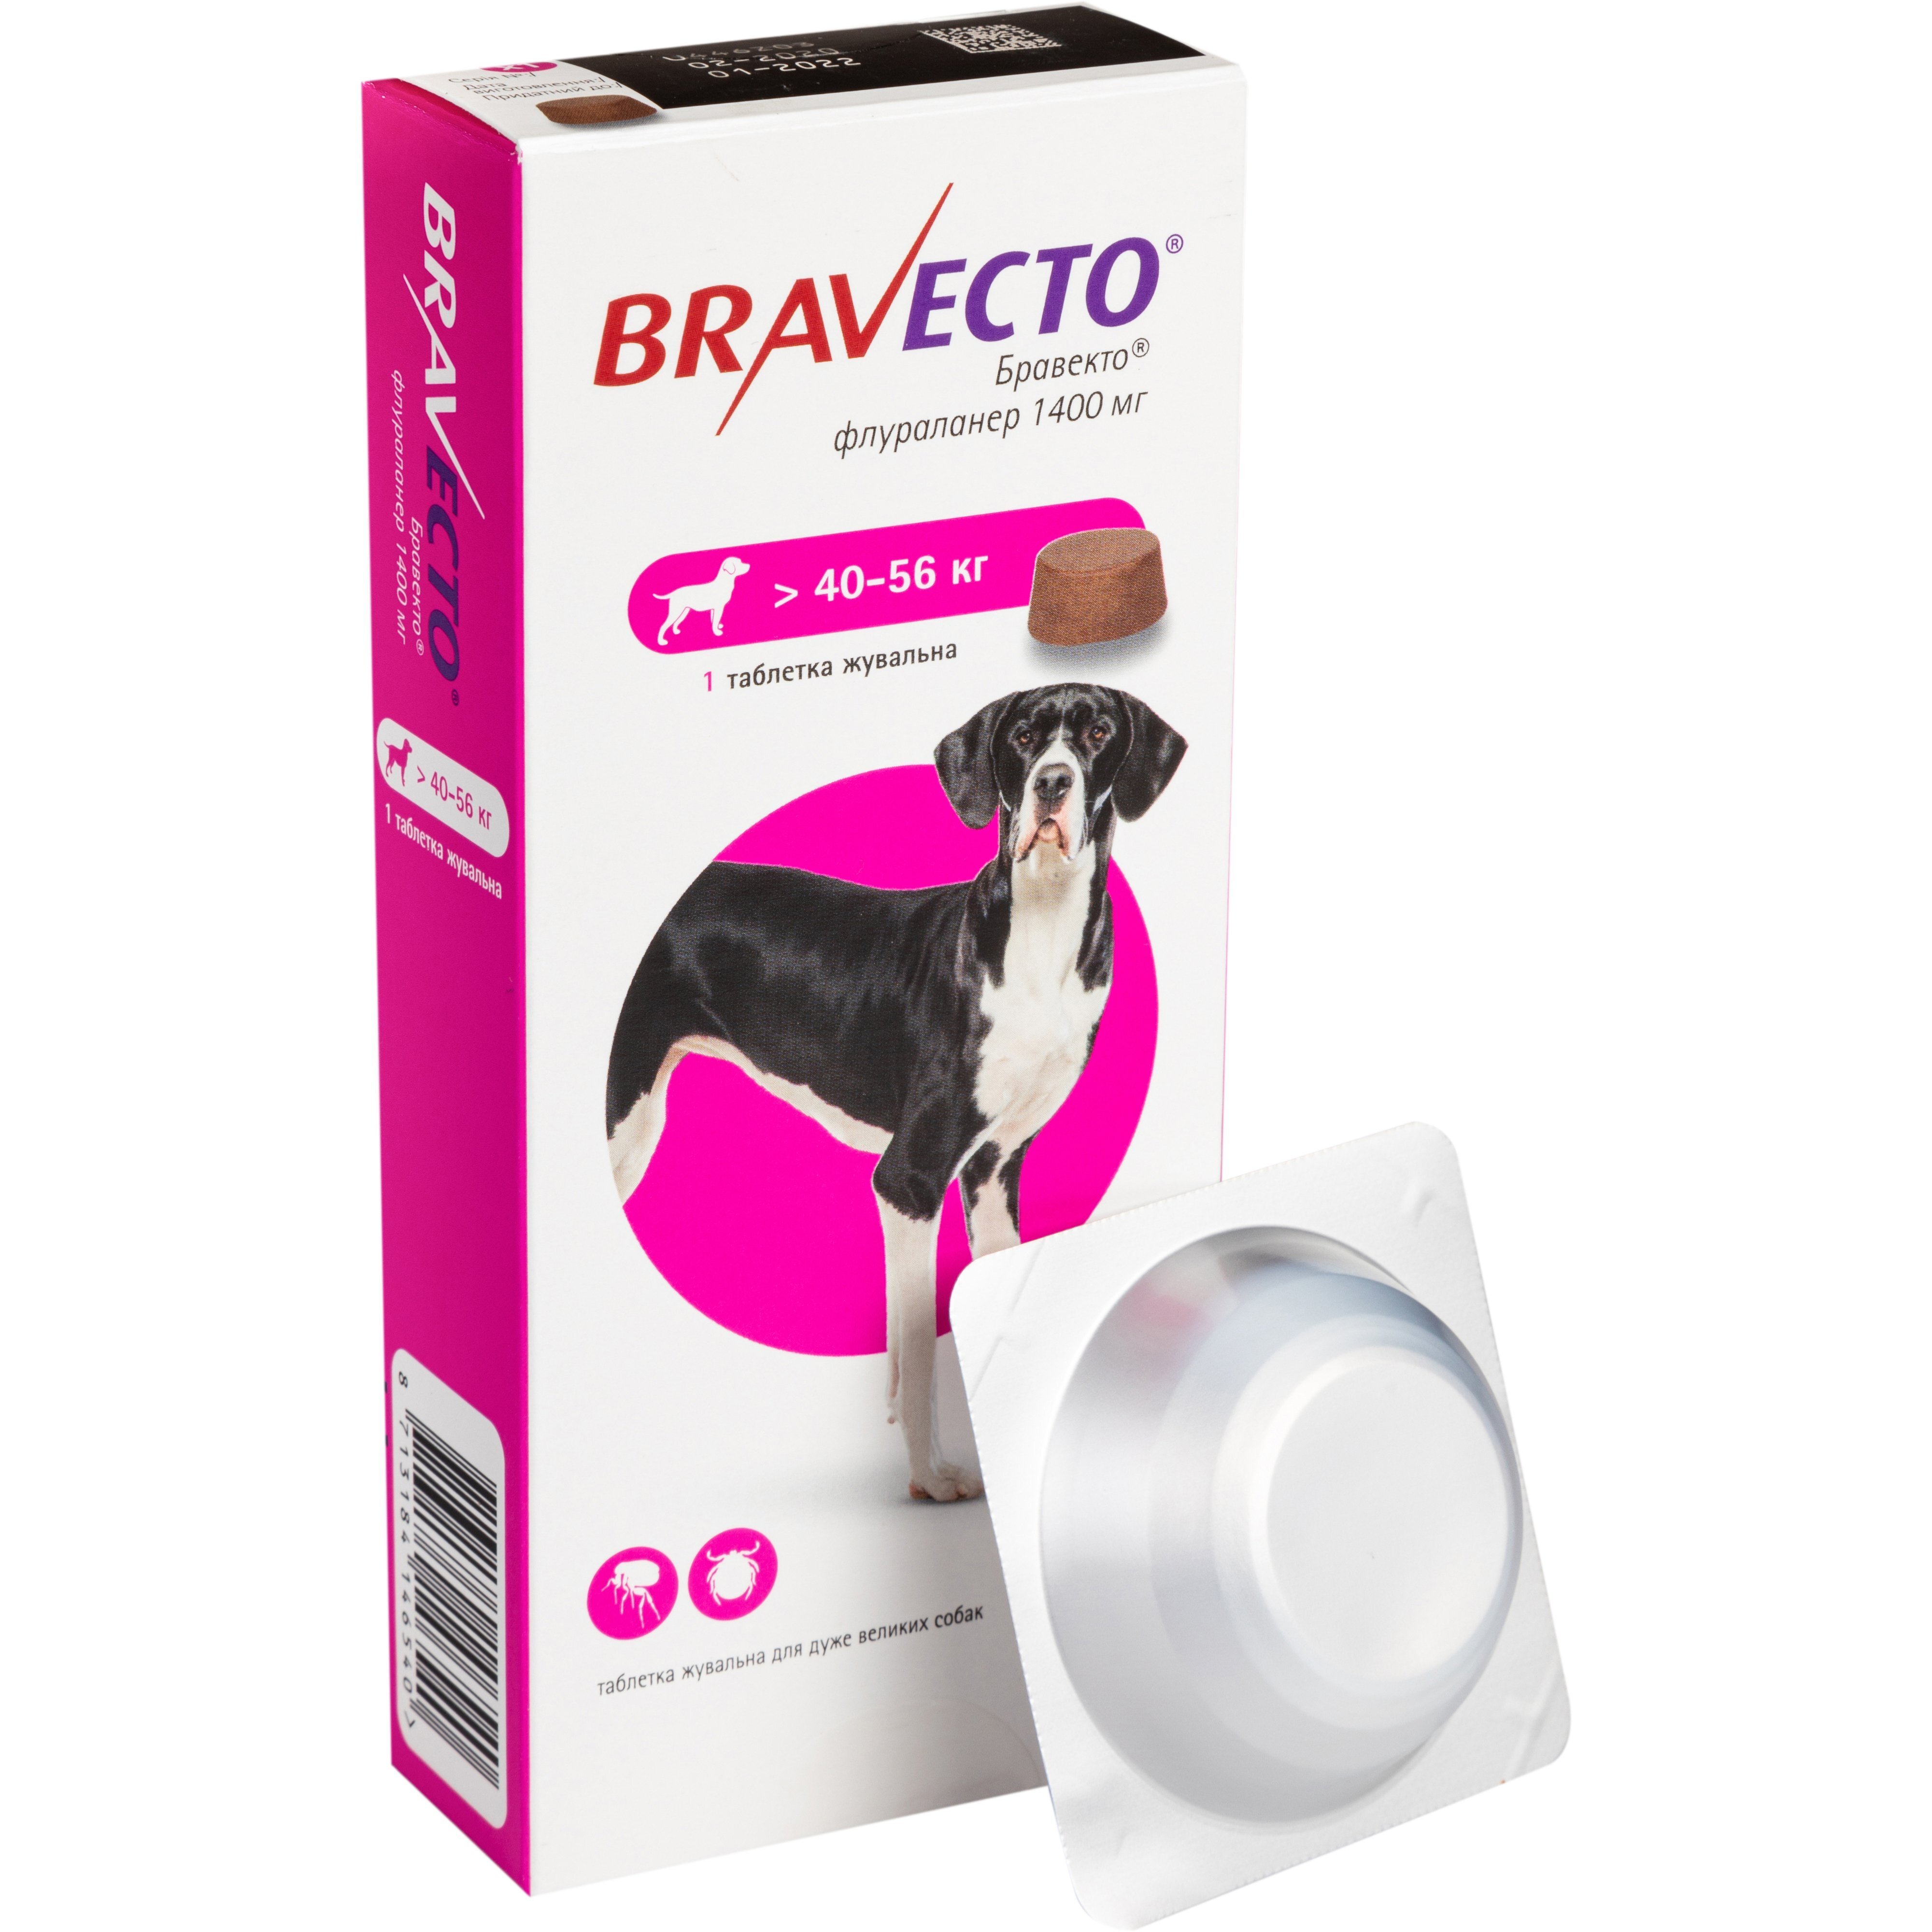 Жевательная таблетка Bravecto (Бравекто) от блох и клещей для собак 40 - 56 кг фото 1